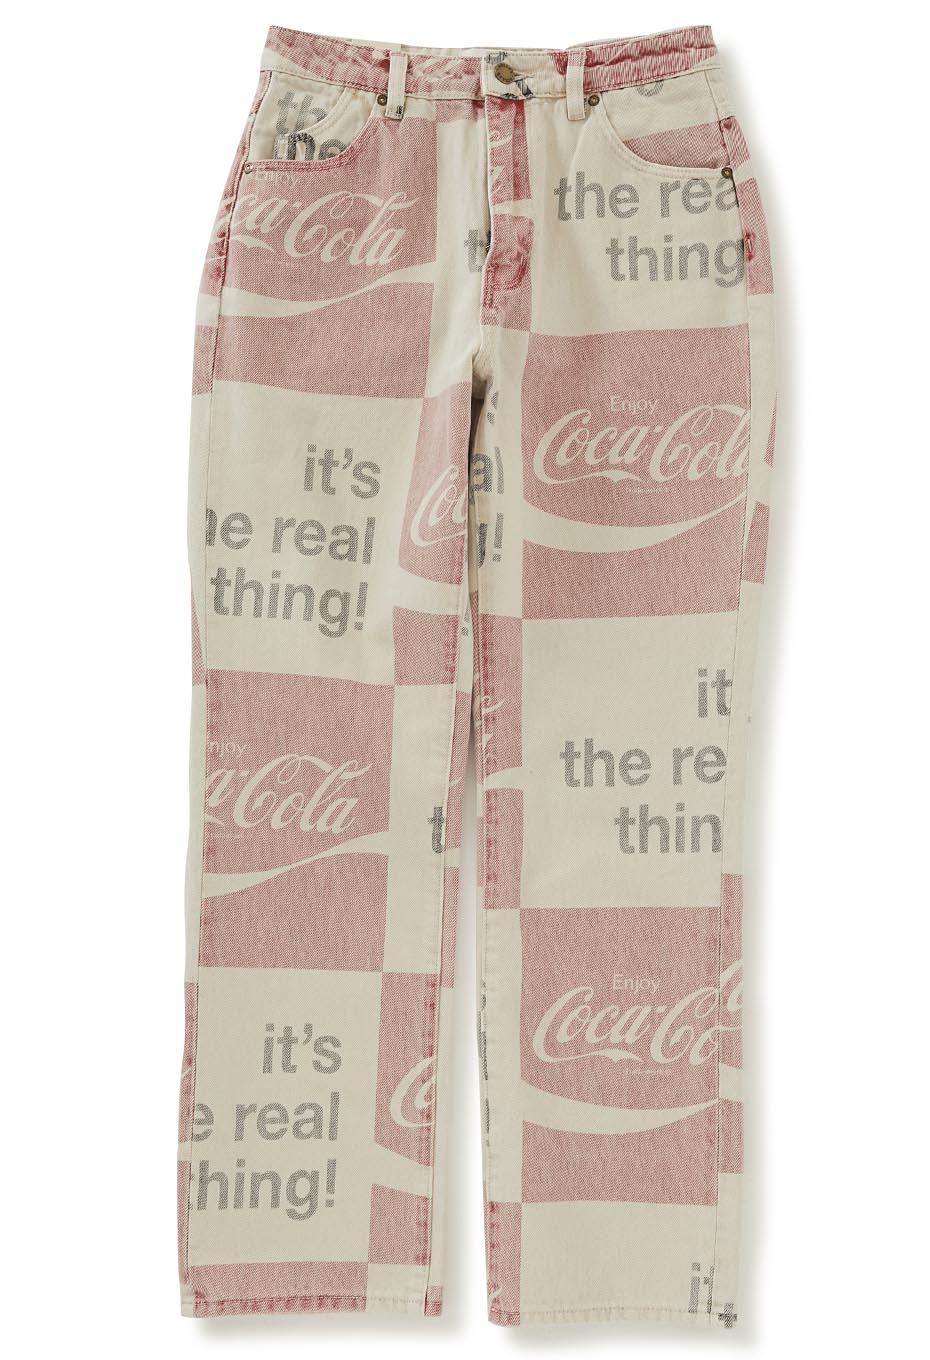 ROLLA'S Original Straight Jeans Coca-Cola Women's